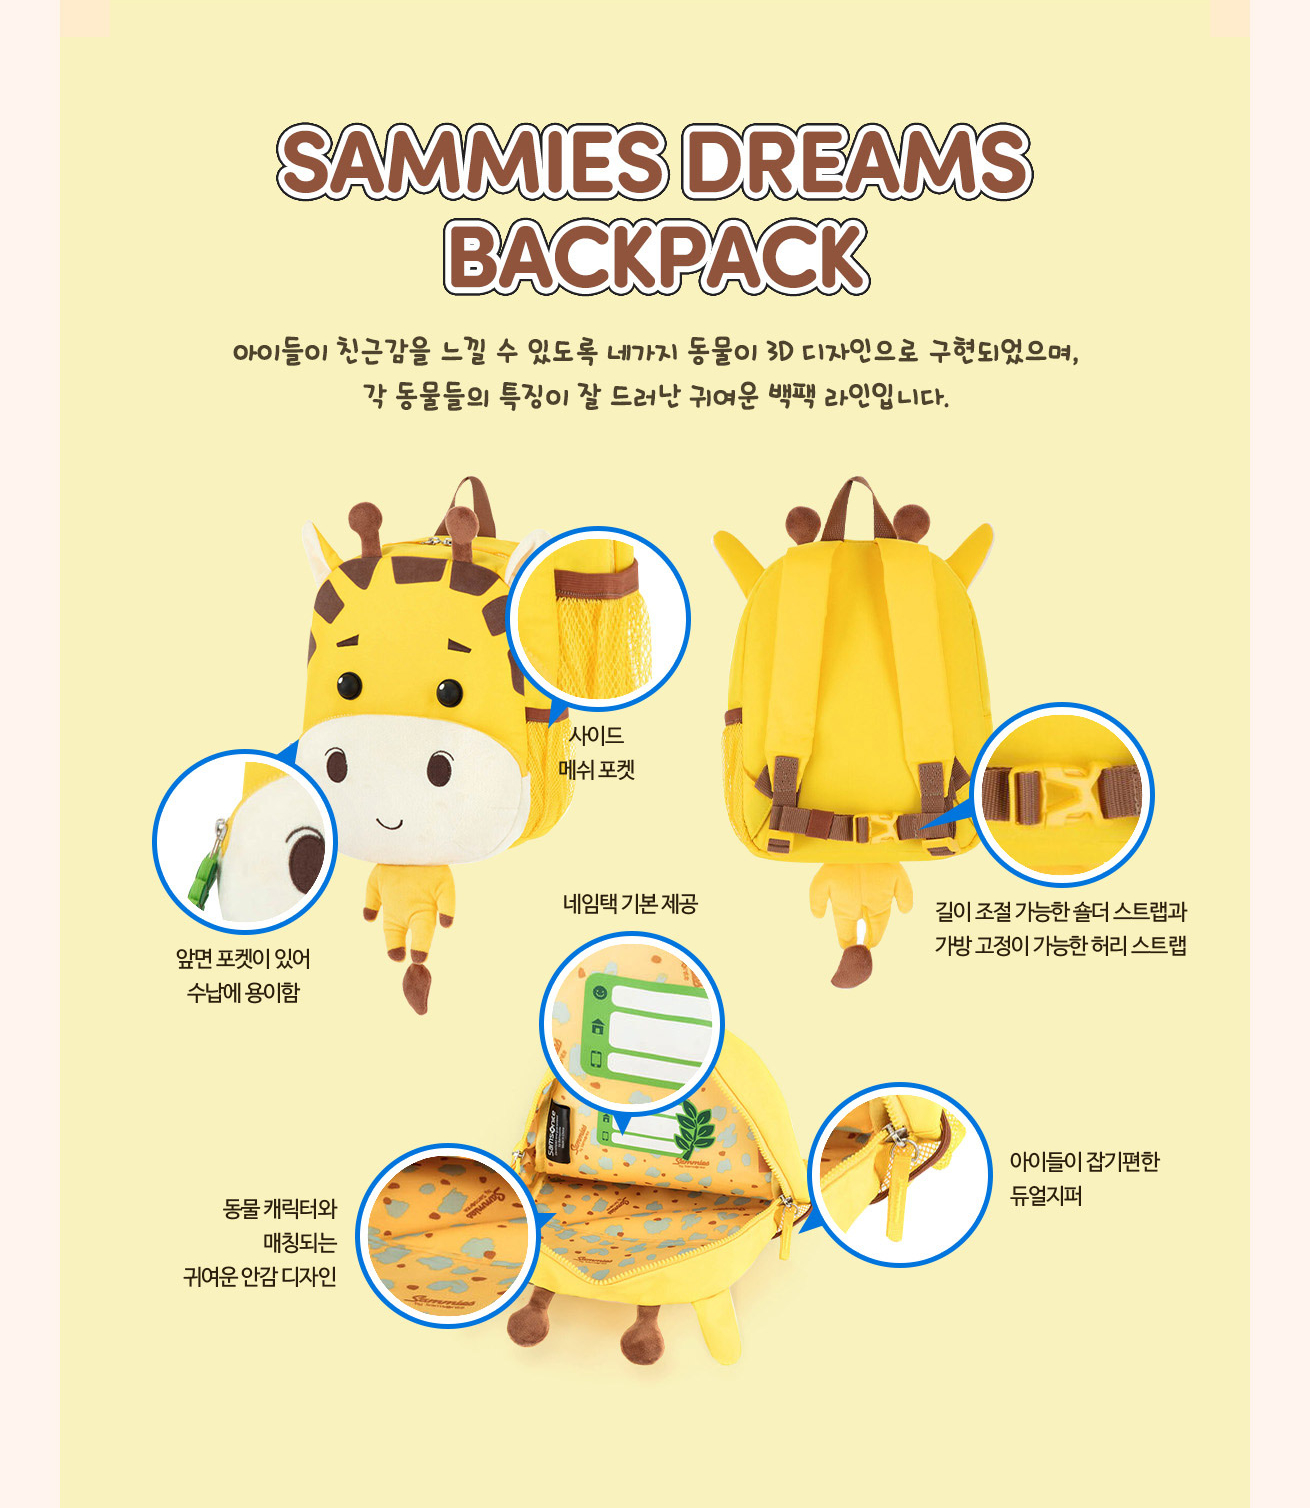 SAMMIES DREAMS BACKPACK